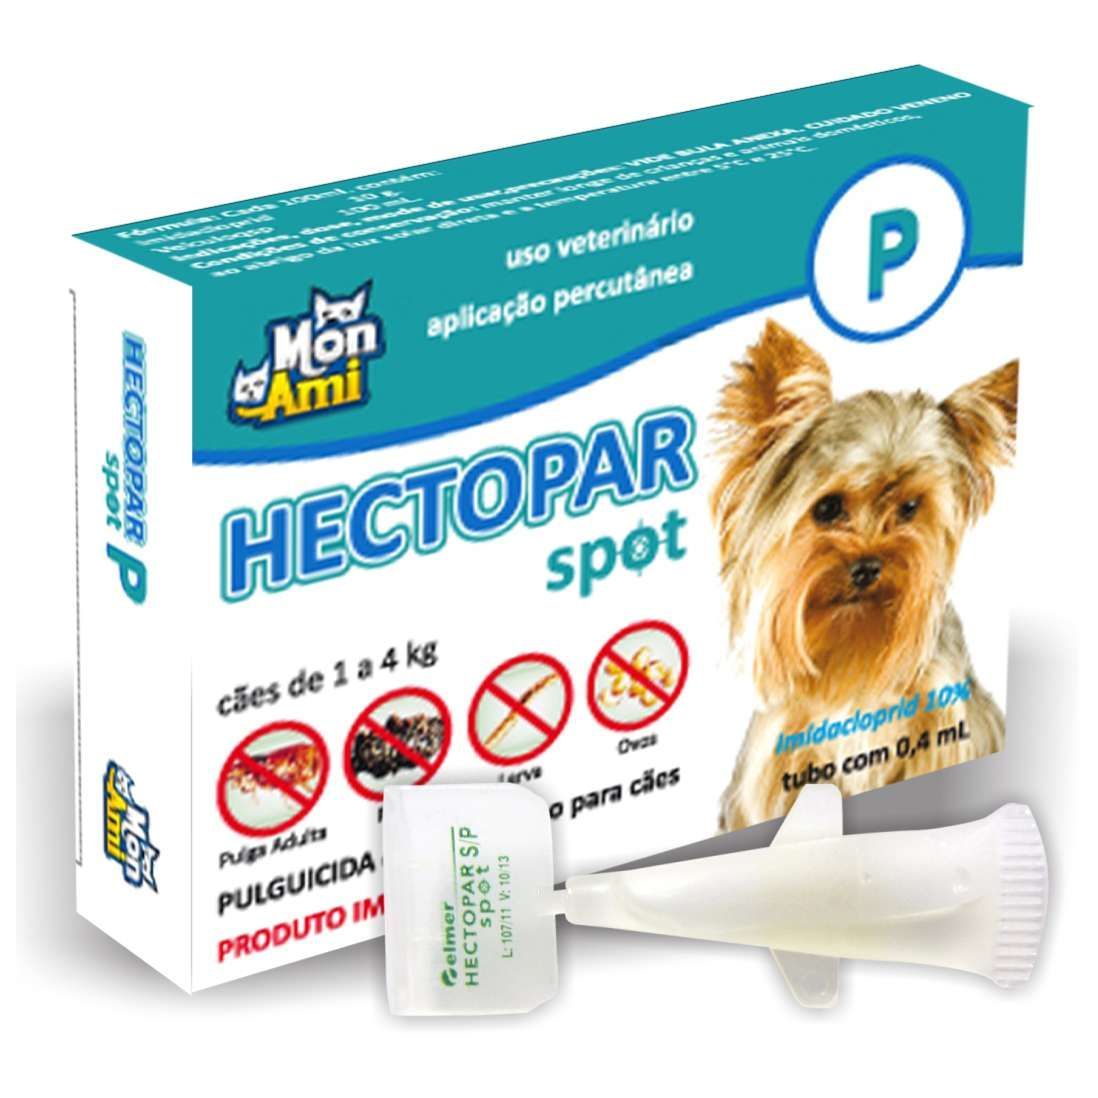 Hectopar Spot P Cães (de 1 A 4 Kg) | Antipulga